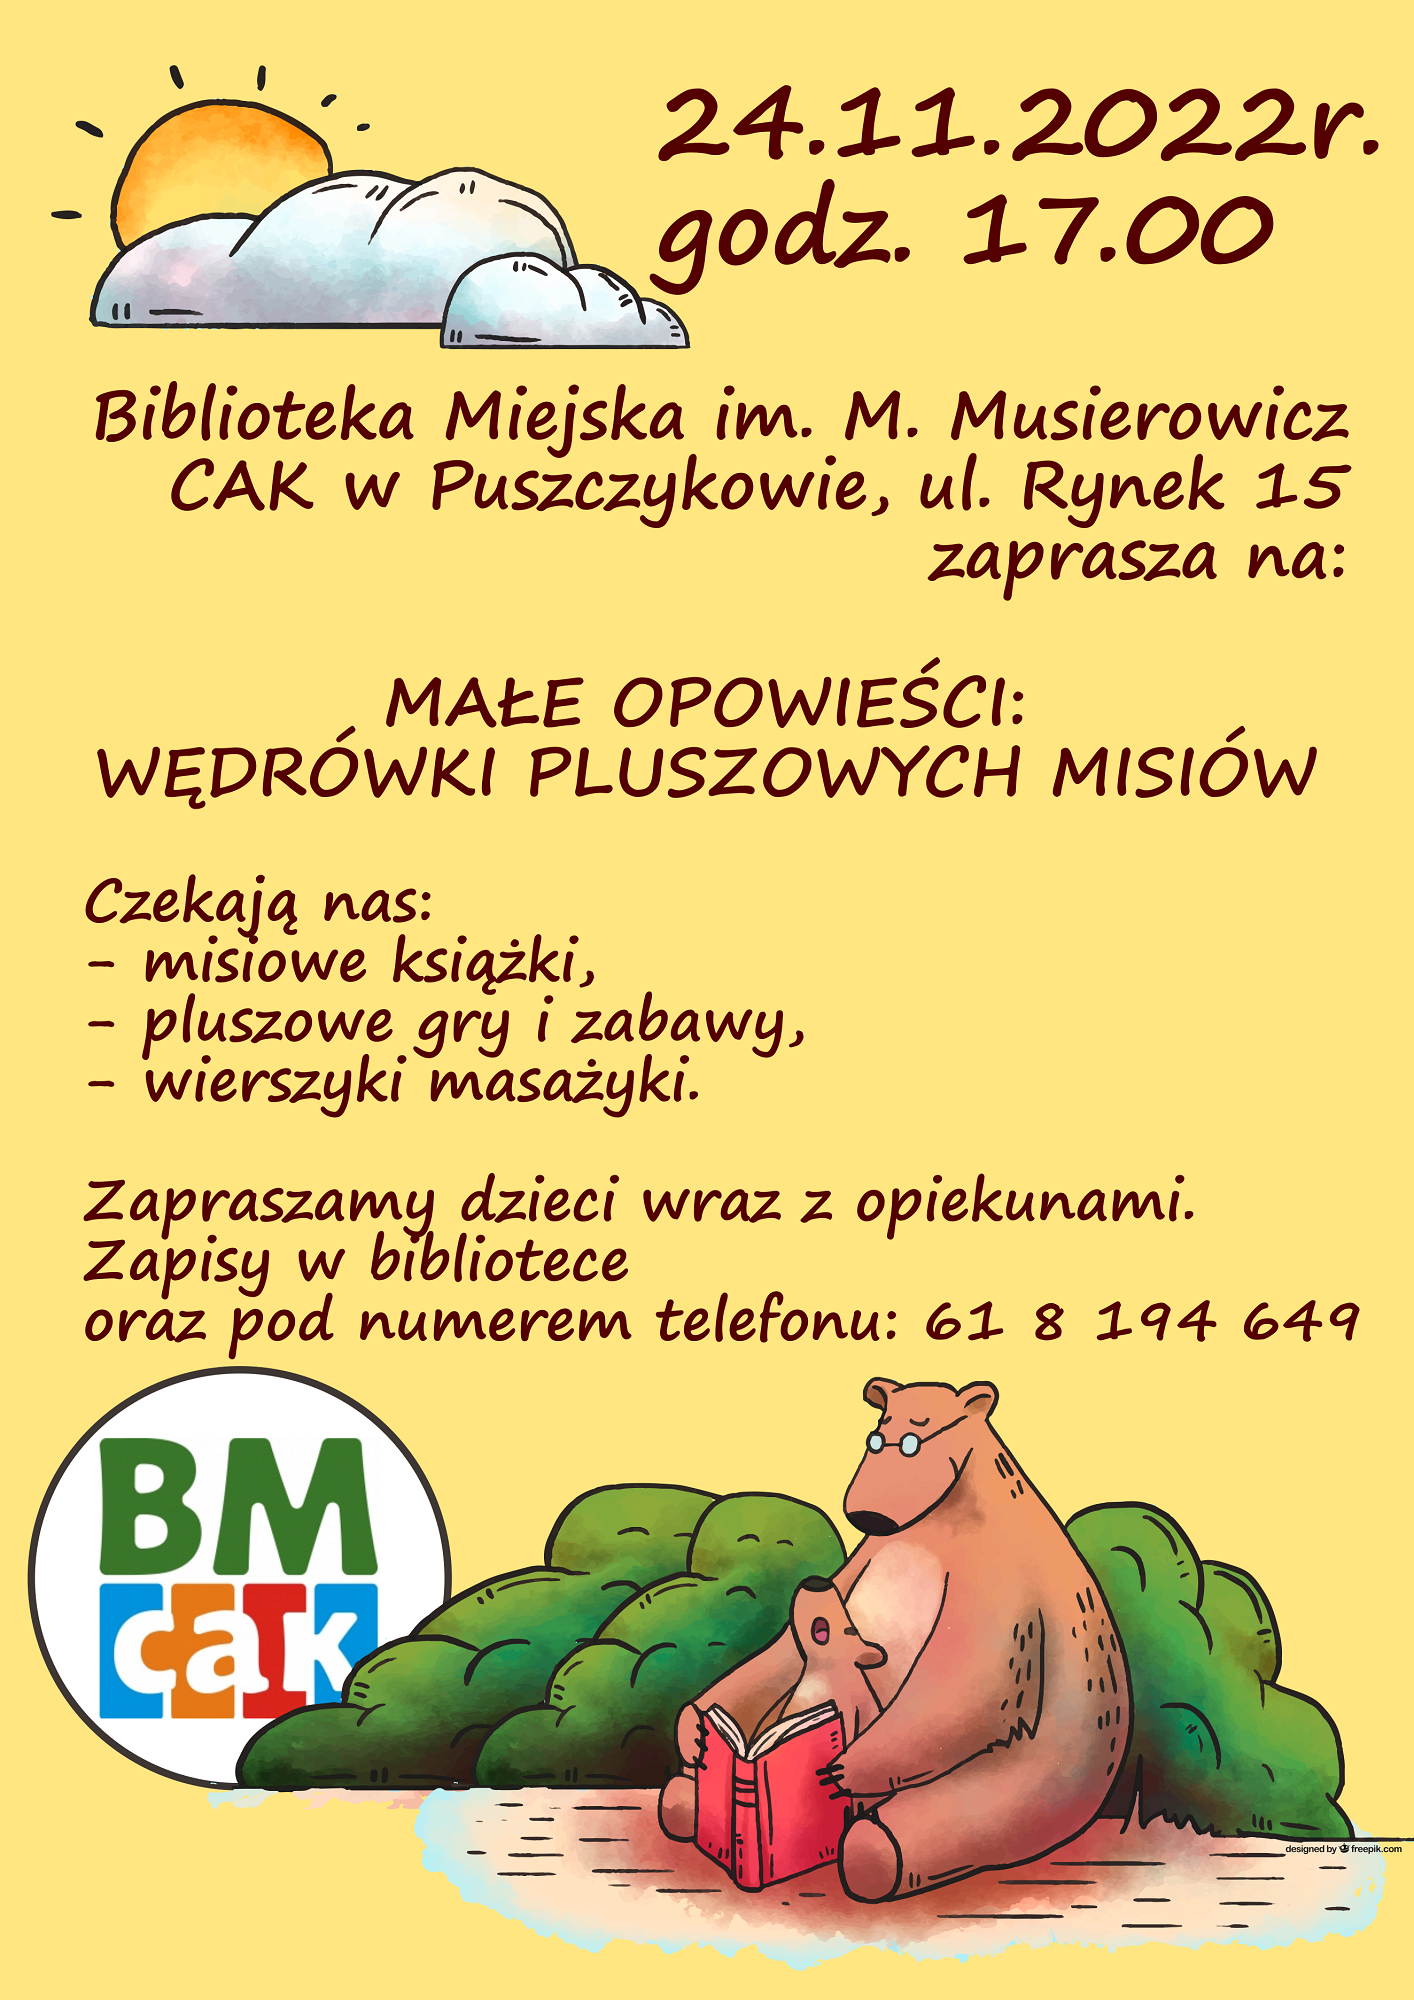 Biblioteka Miejska w Puszczykowie zaprasza na małe opowieści: wędrówki pluszowych misiów.